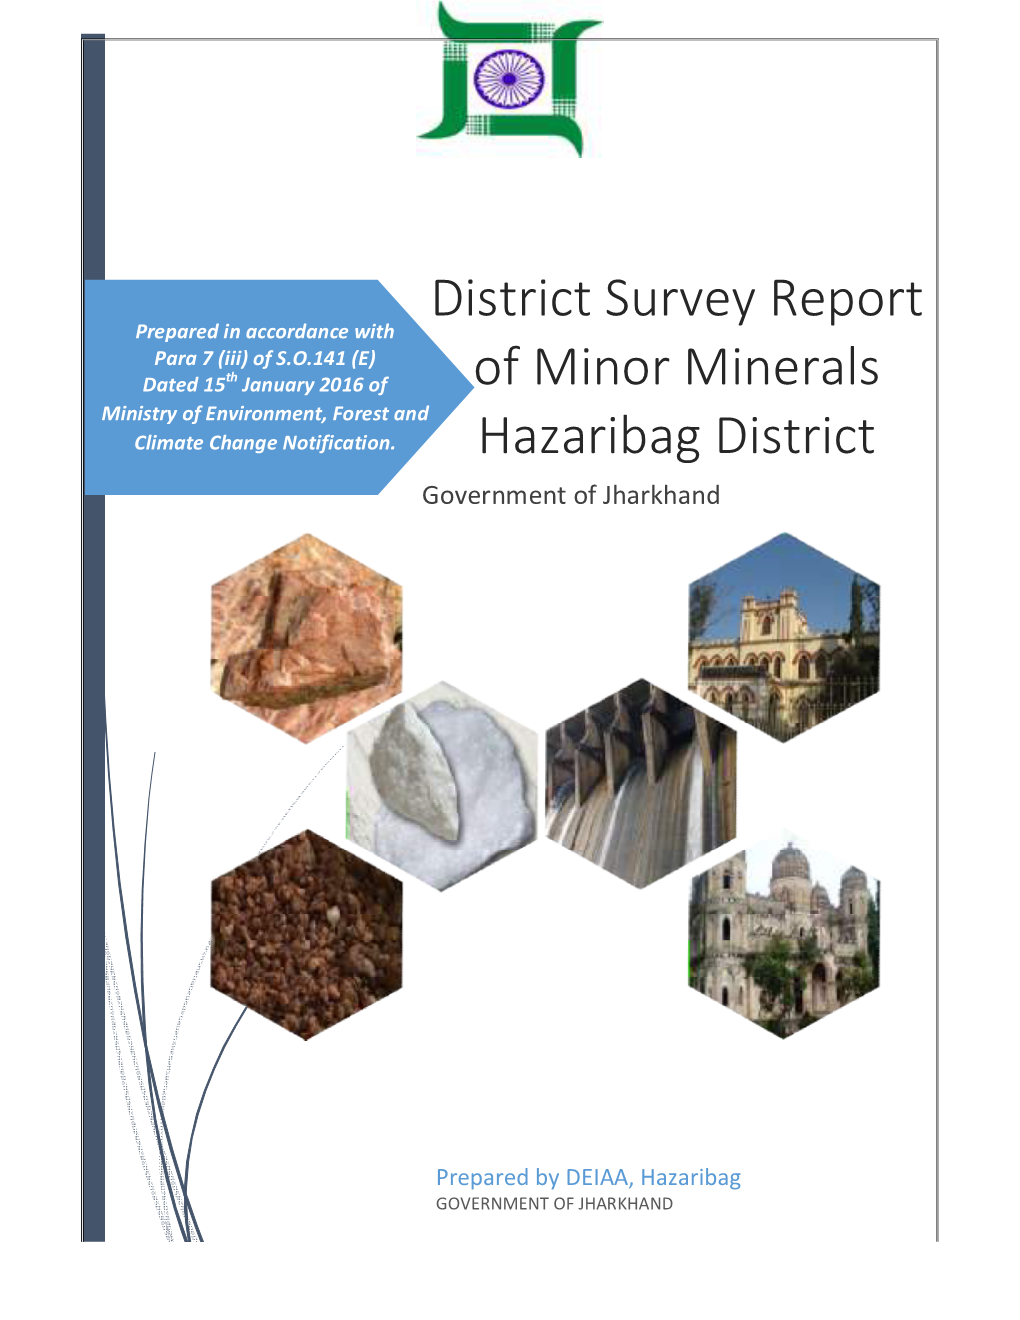 District Survey Report of Minor Minerals Hazaribag District